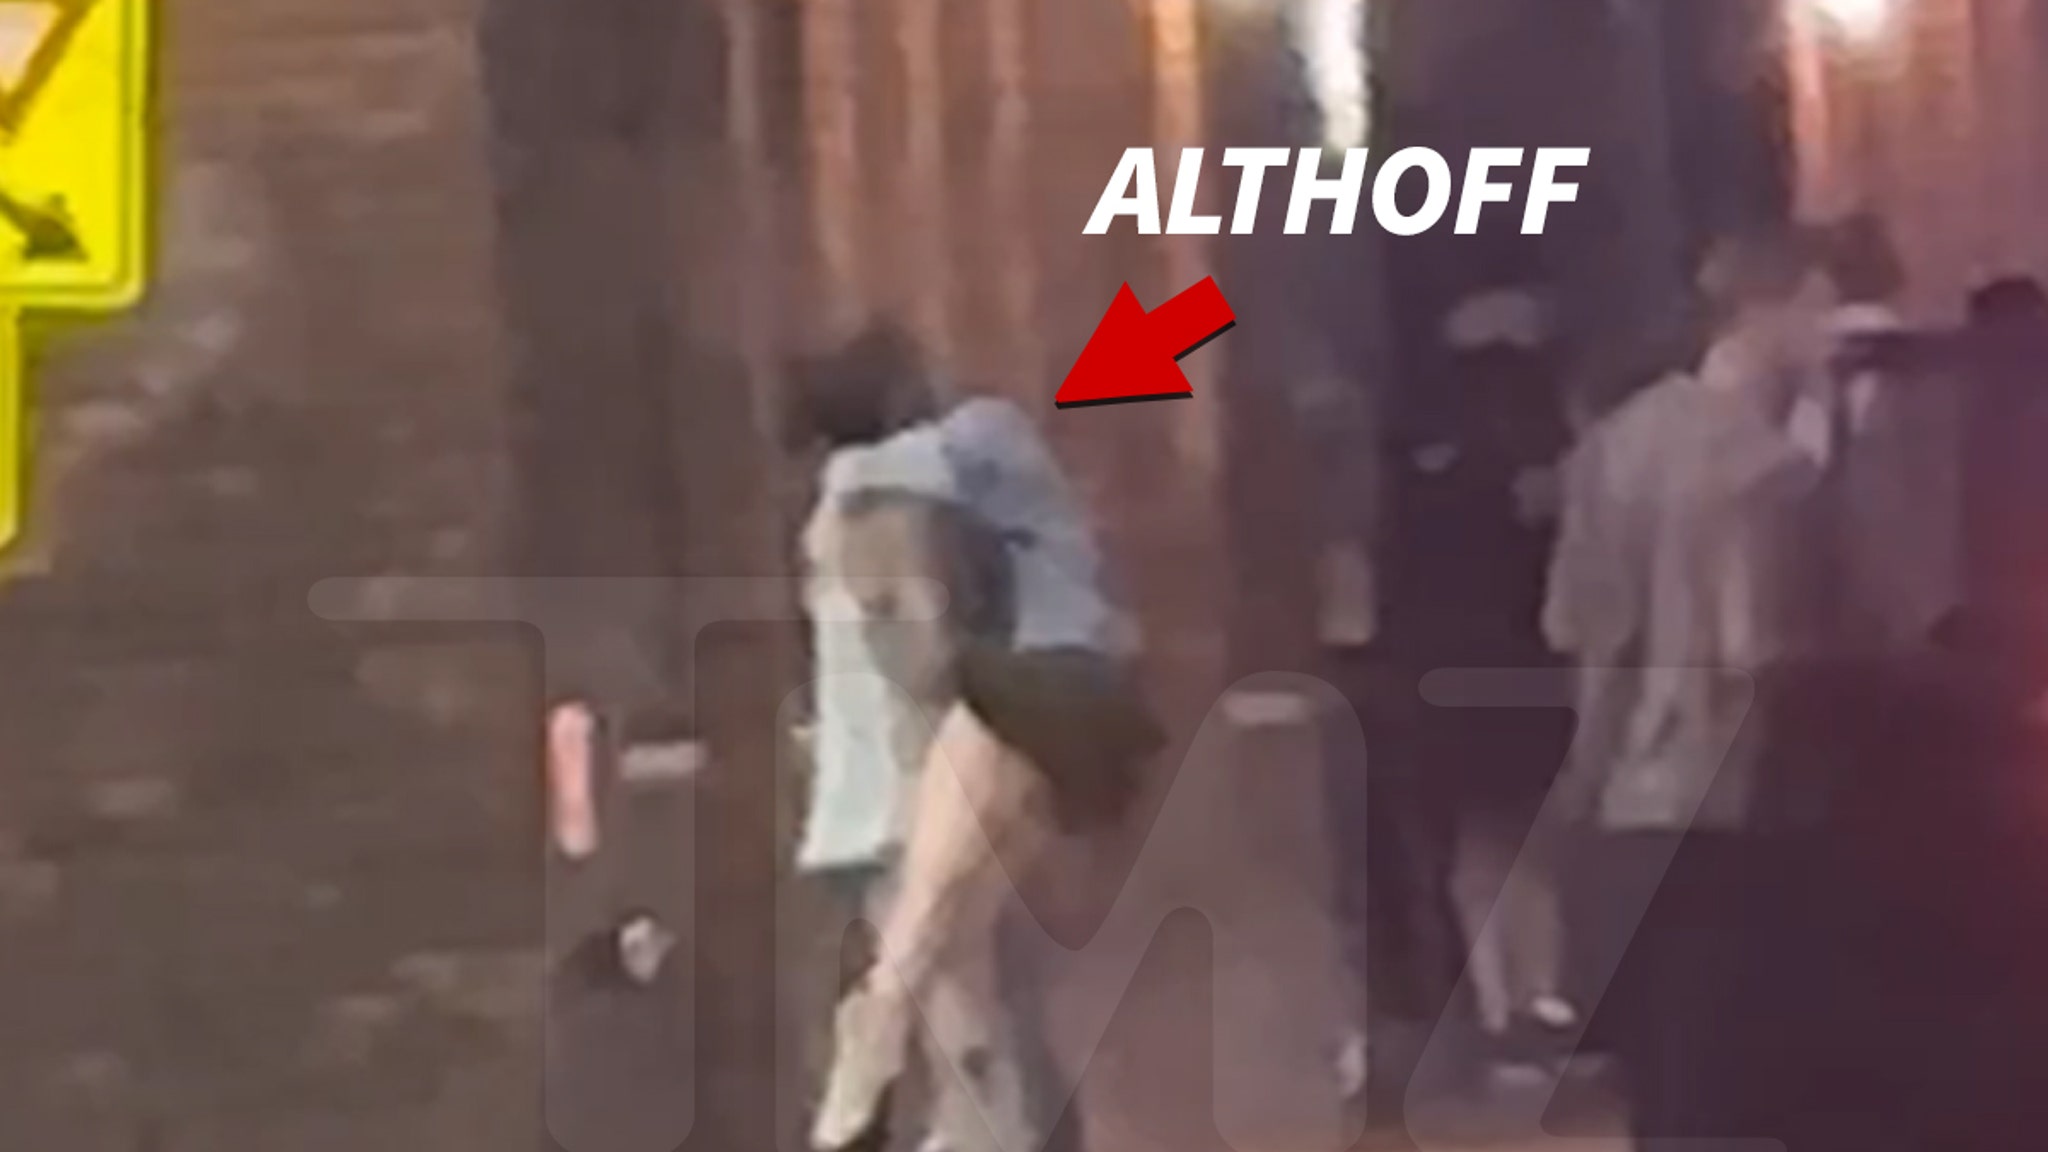 Bobby Altuve a été escorté depuis un bar de Nashville, montre une vidéo